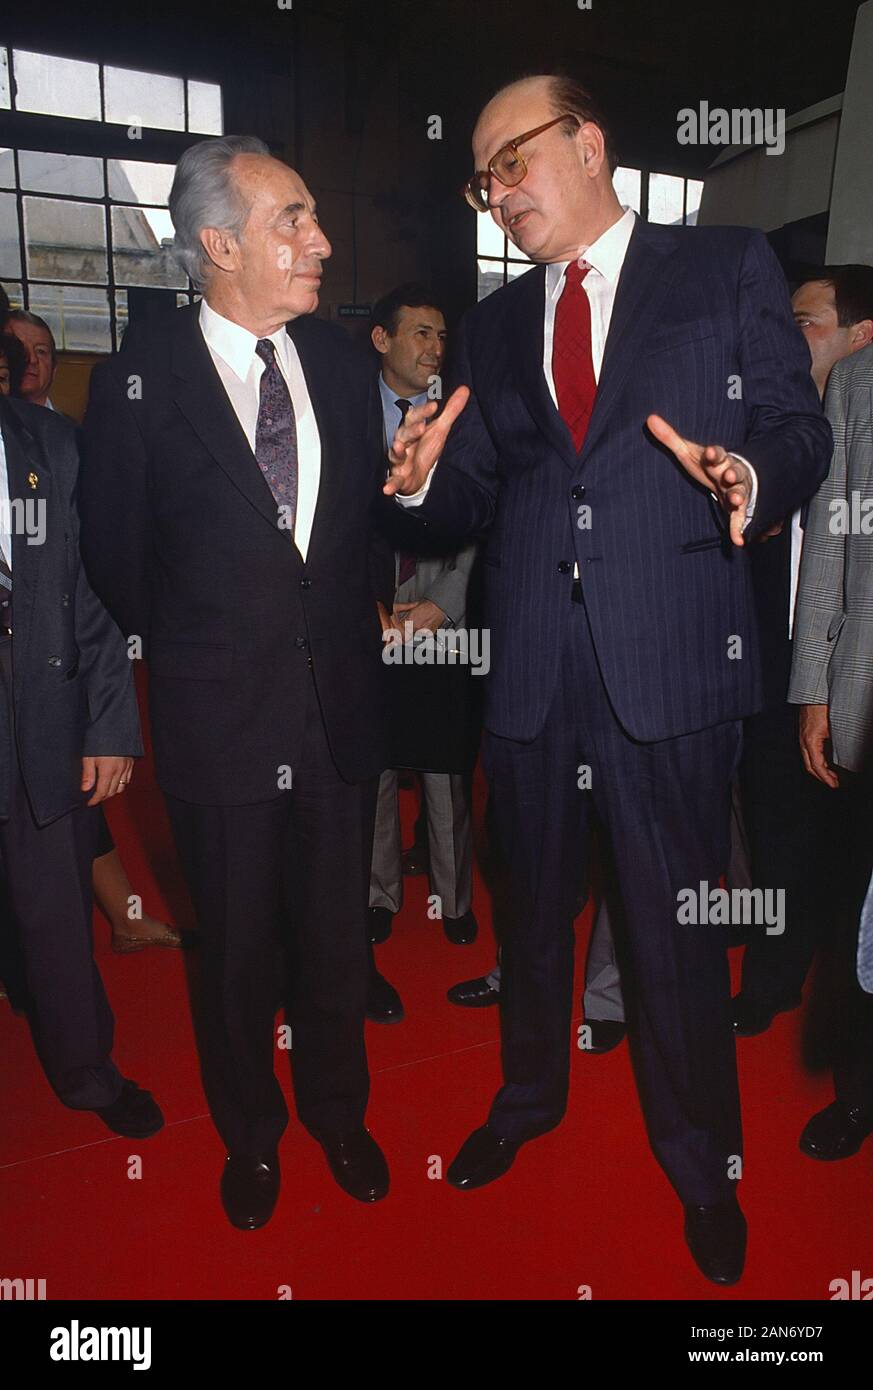 Milán (Italia), Bettino Craxi, secretario del PSI (Partido Socialista Italiano) con Shimon Peres, líder del partido laborista israelí en el 45º Congreso de la PSI (mayo de 1989) Foto de stock